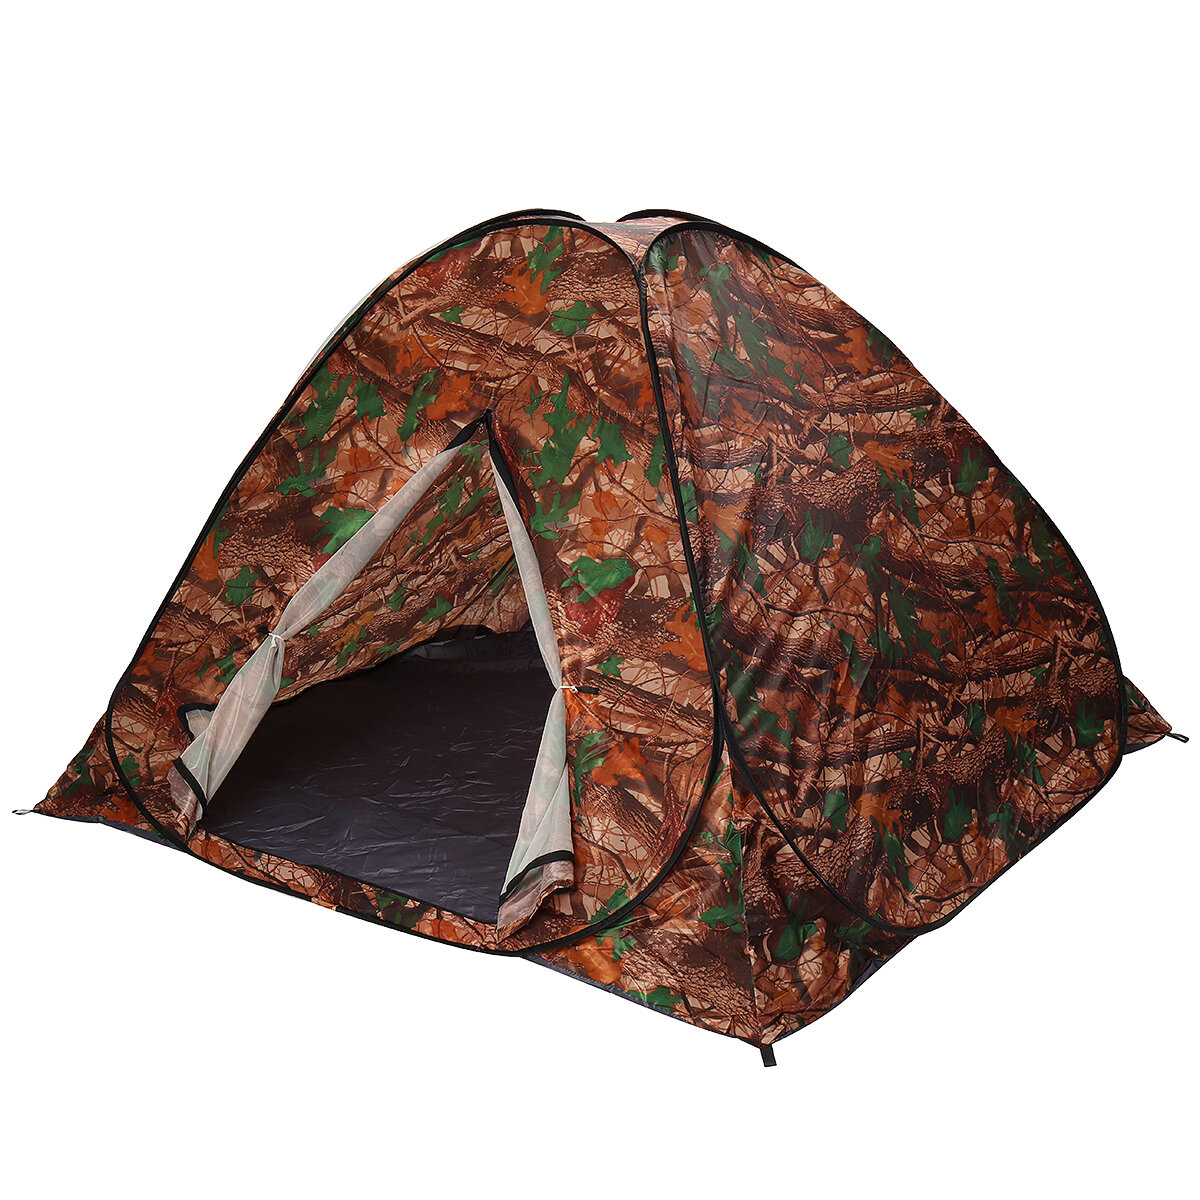 ançais: Tente de camping automatique pour 3-4 personnes Ouverture rapide instantanée Anti-UV avec revêtement argenté Tente avec auvent camouflage feuille pour une utilisation en extérieur